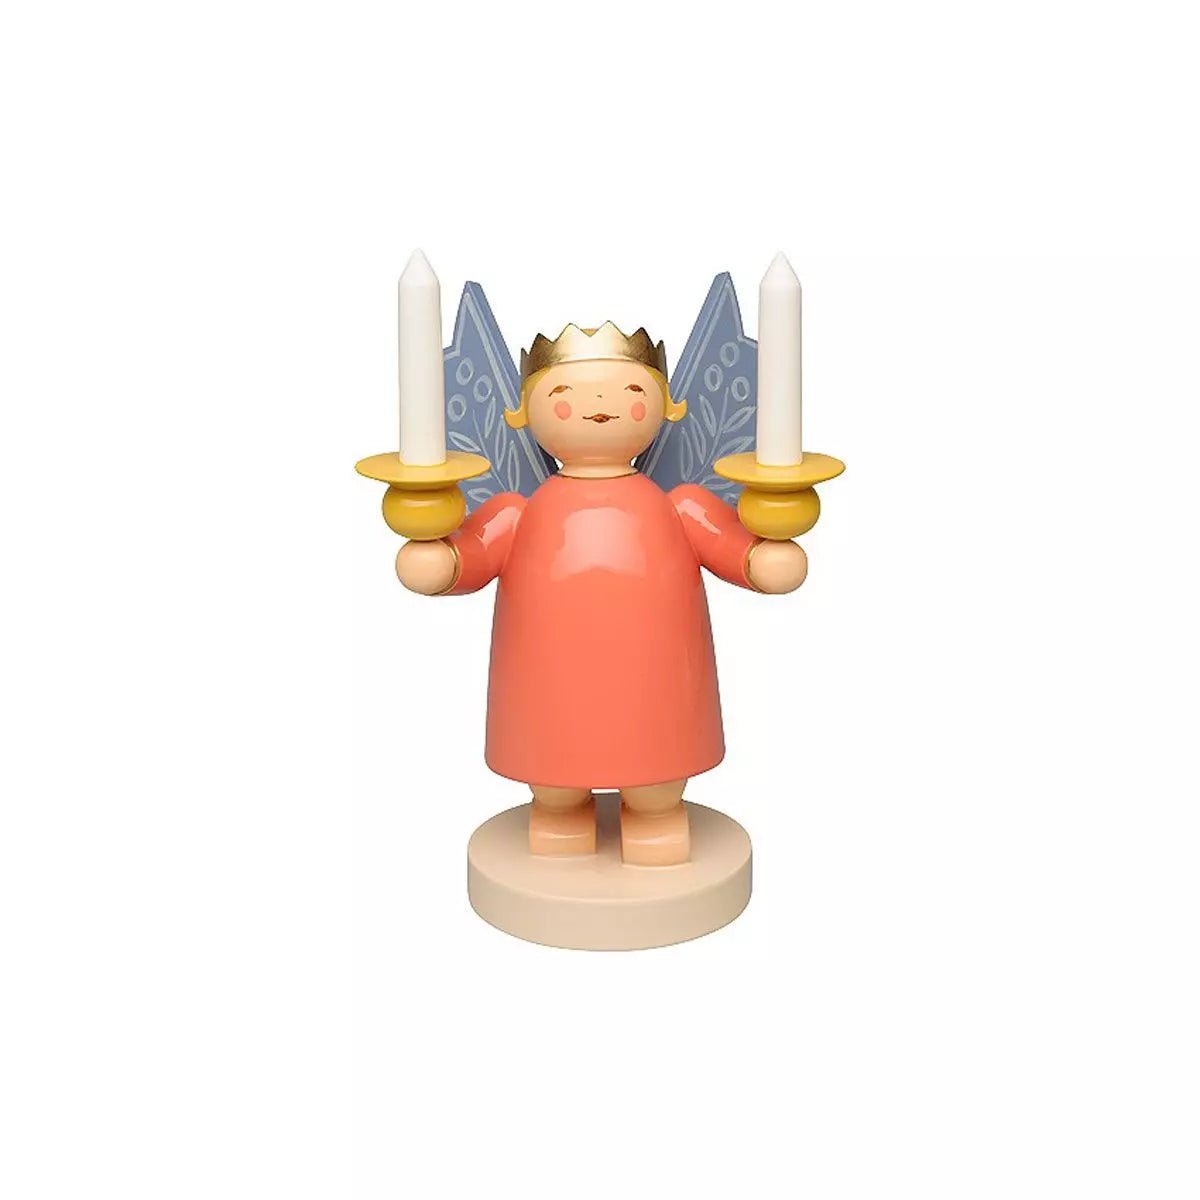 Wendt & Kühn-Kronenengel, gekroonde engel met twee lichtschalen en houten kaarsen, 10,5 cm. - Schreuder-kraan.shop